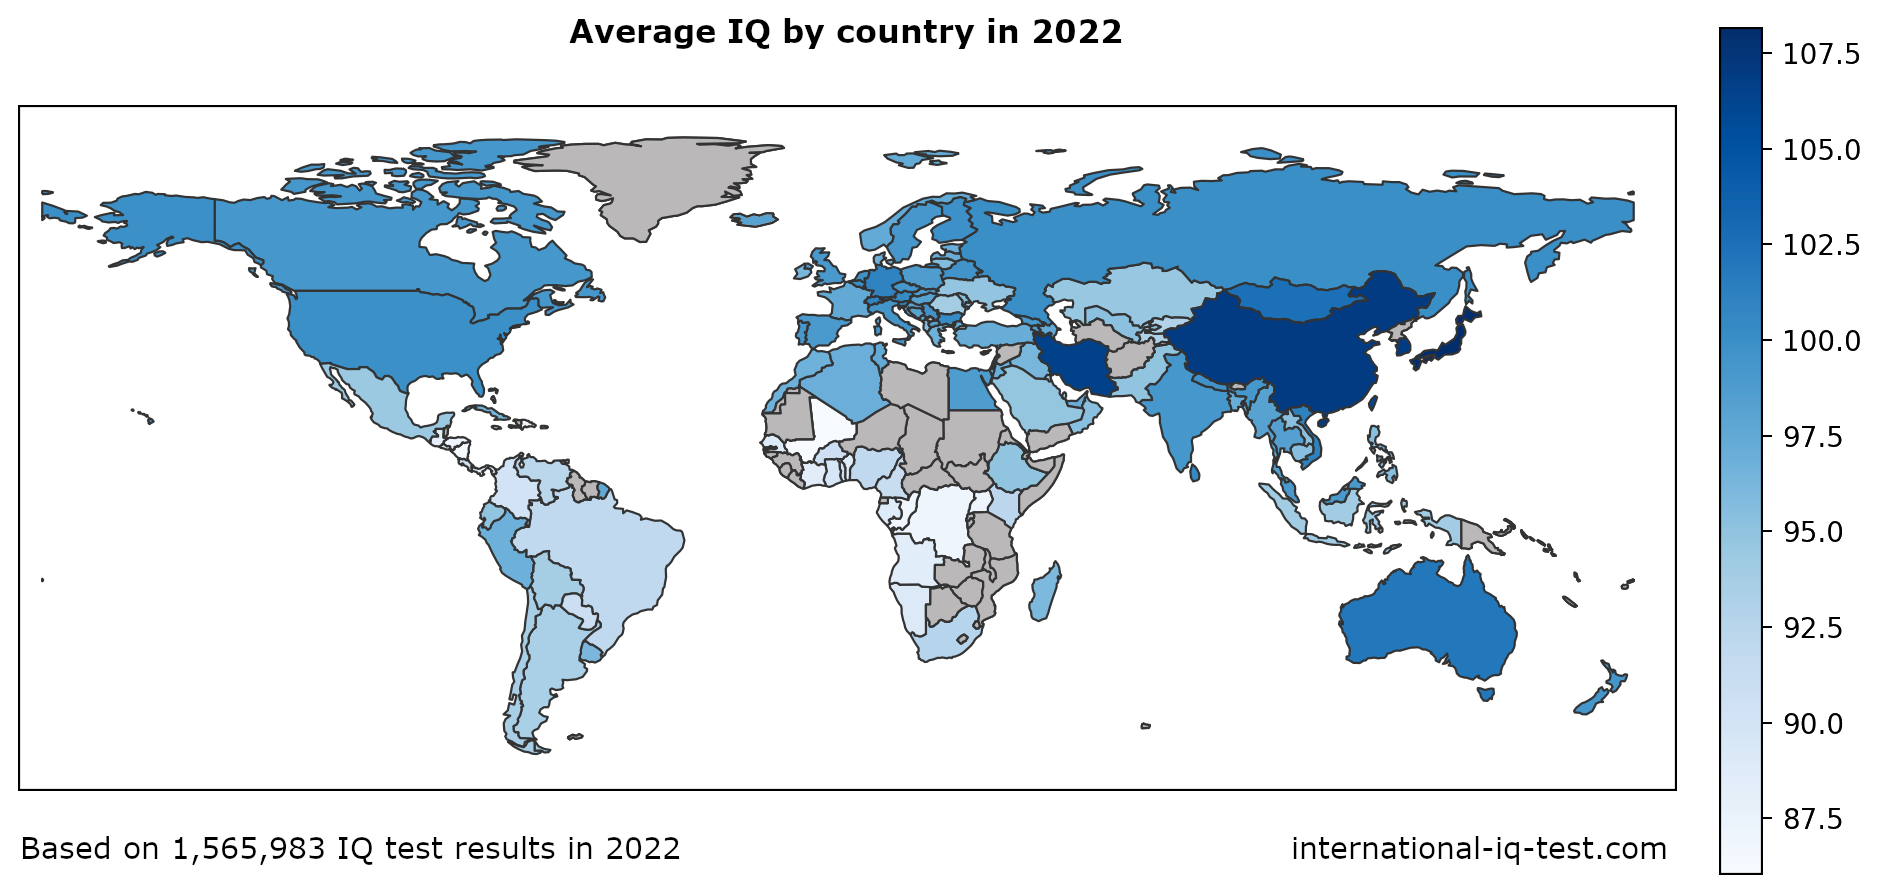 Mapa světa zobrazující průměrné IQ v jednotlivých zemích v roce 2022 v odstínech modré od nejsvětlejší po nejtmavší.